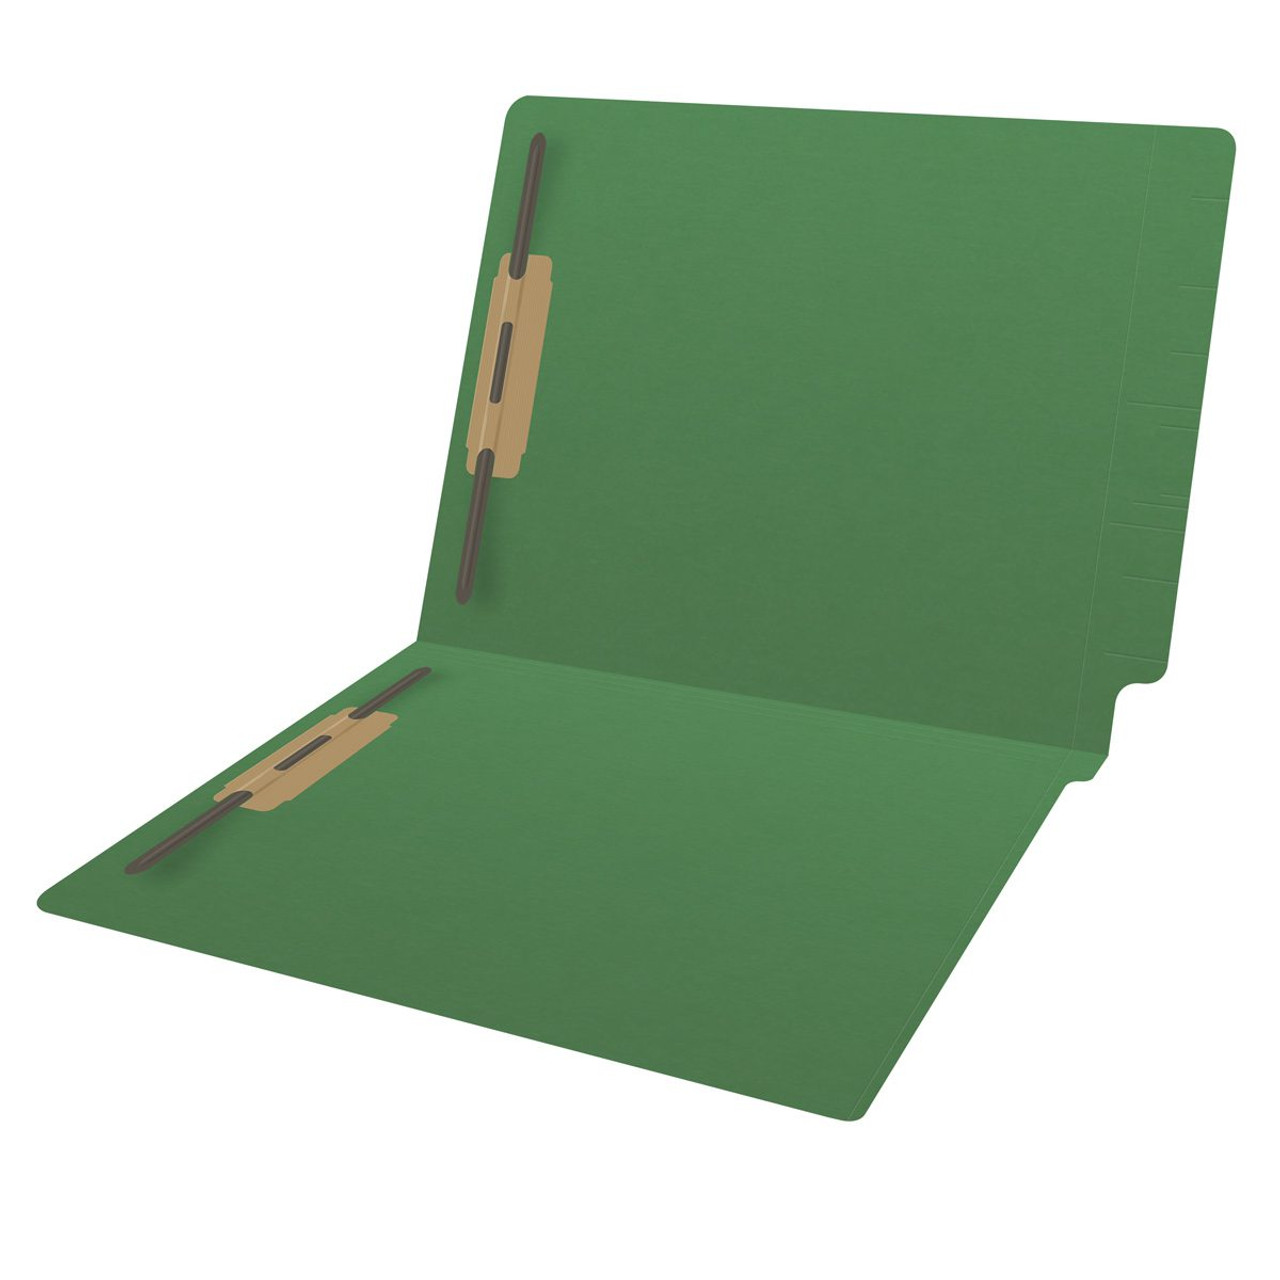 green folder clipart